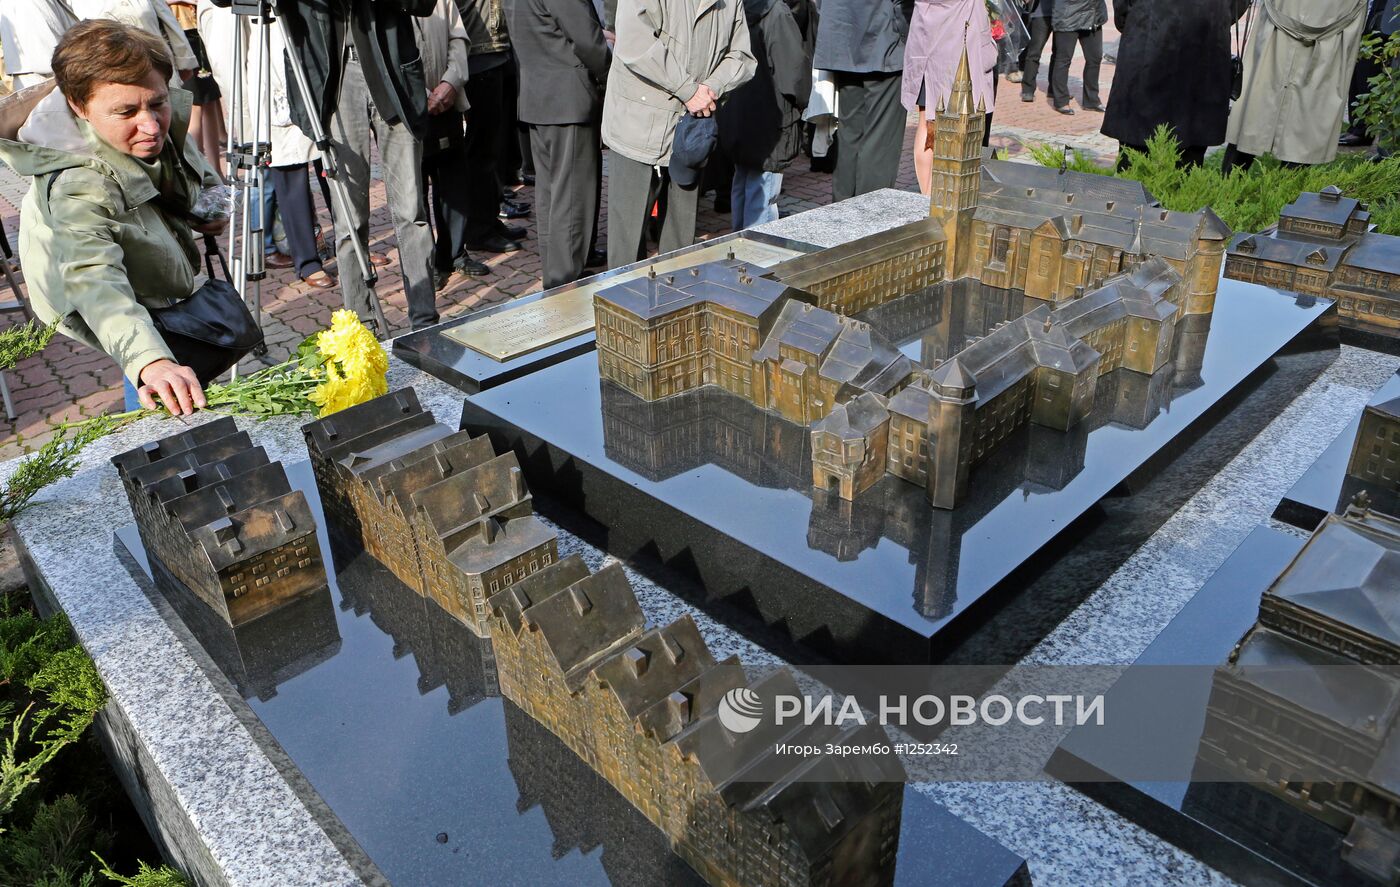 Скульптурная композиция "Символы Кенигсберга" в Калининграде